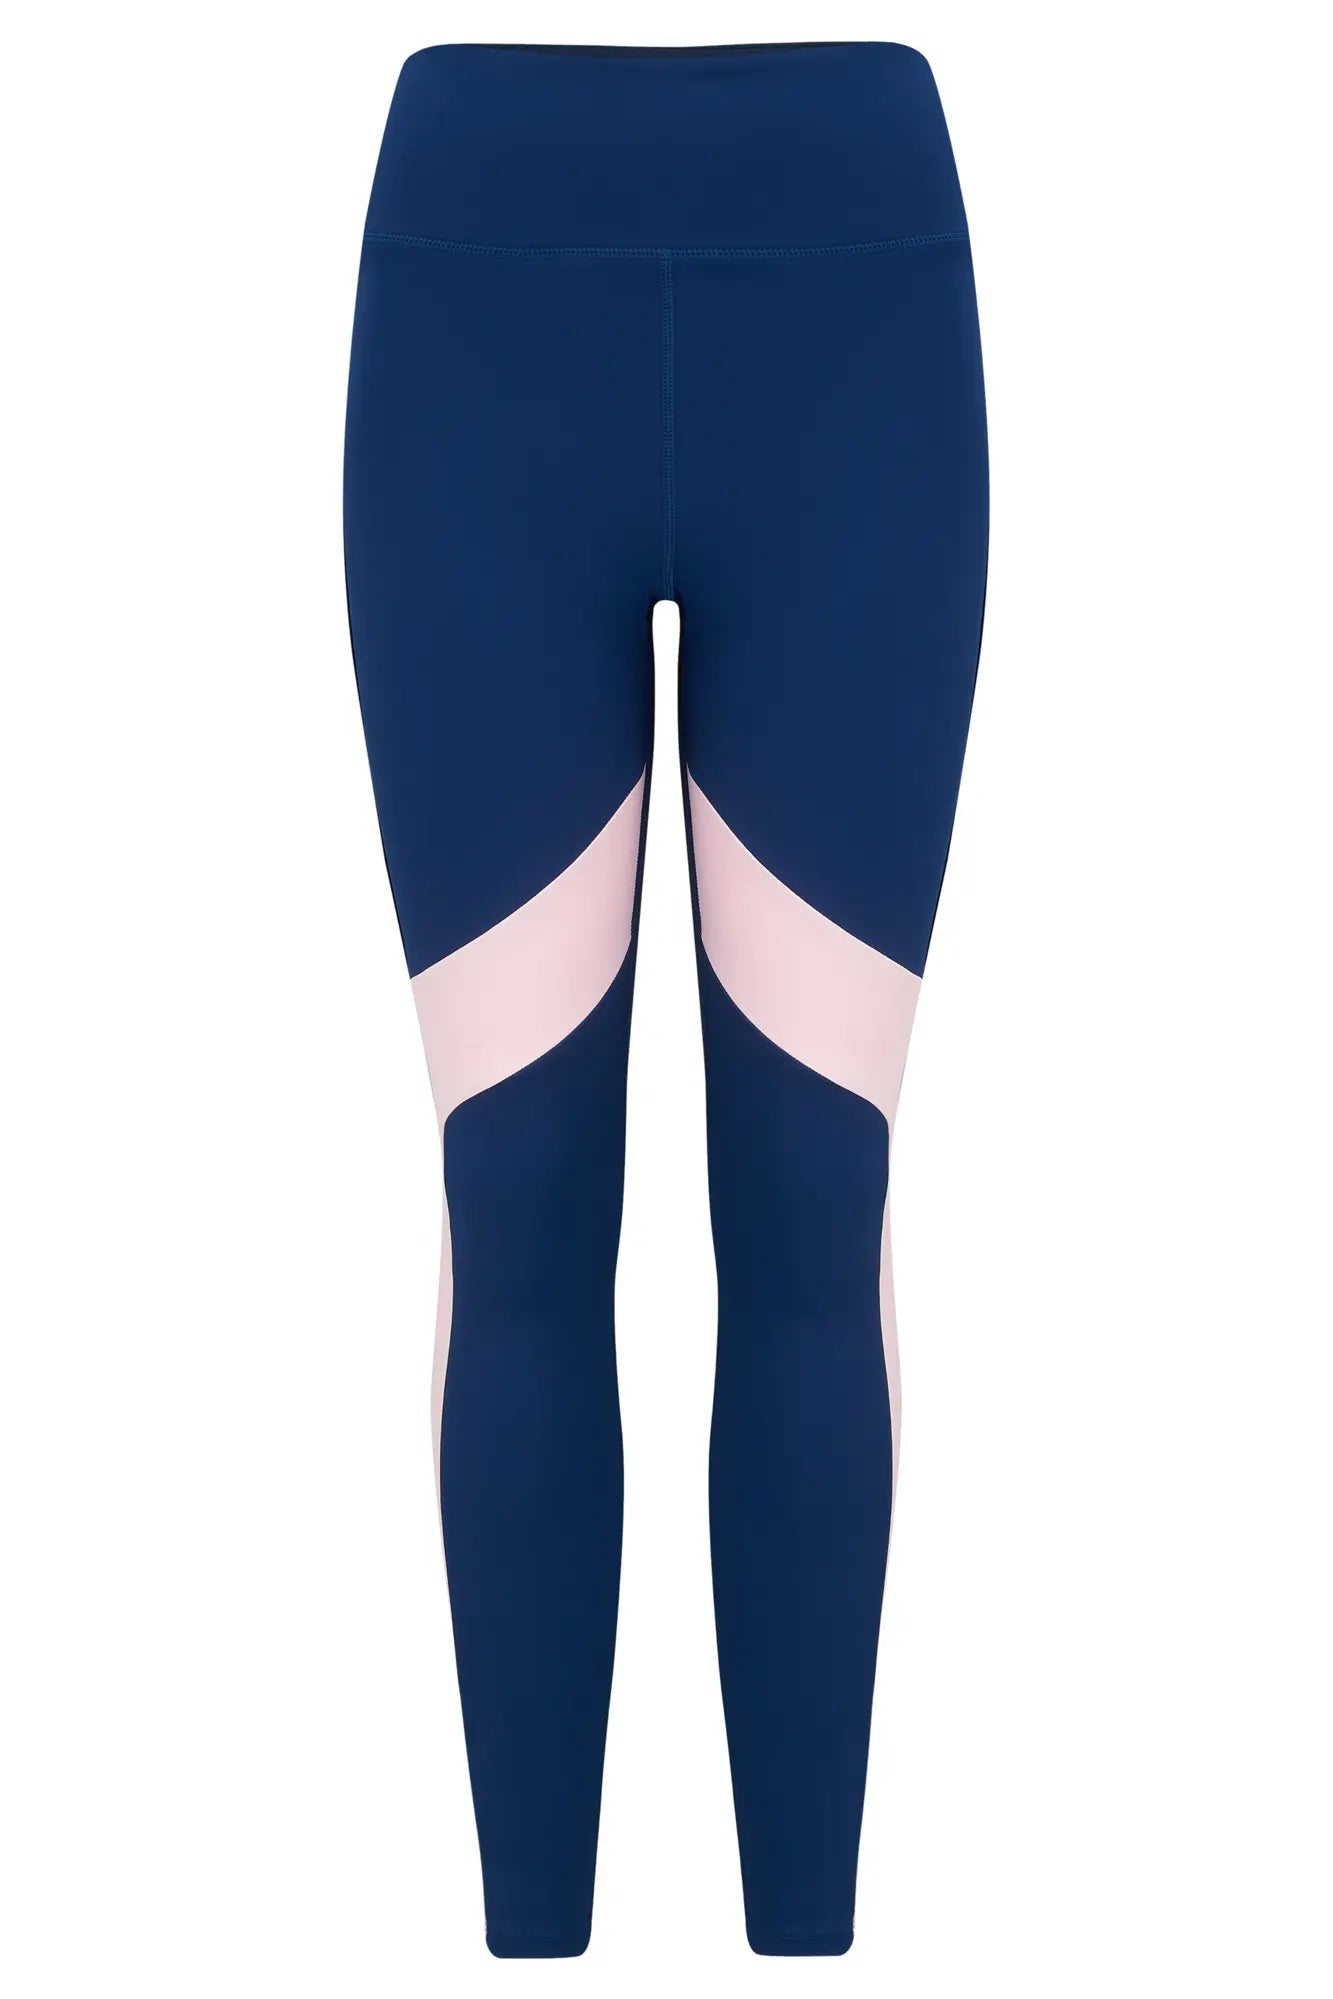 Energy Logo Elastic Legging In Navy & Pink - Pour Moi